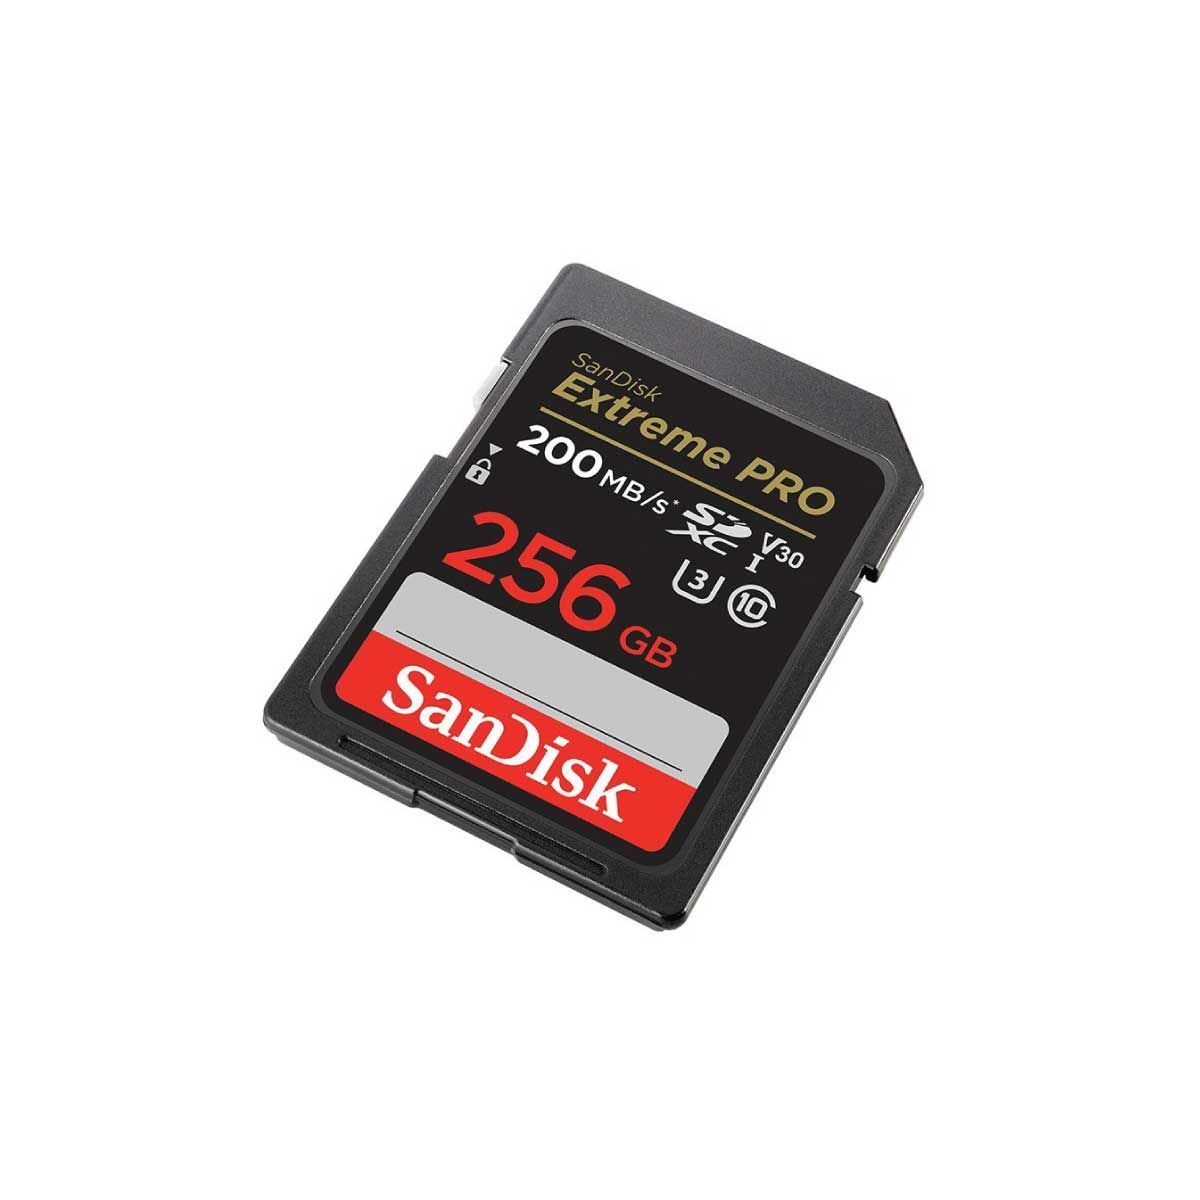 SANDISK SDCARD Extreme Pro 200MB รุ่น SDSDXXD256G (SDSDXXD-256G-GN4IN)